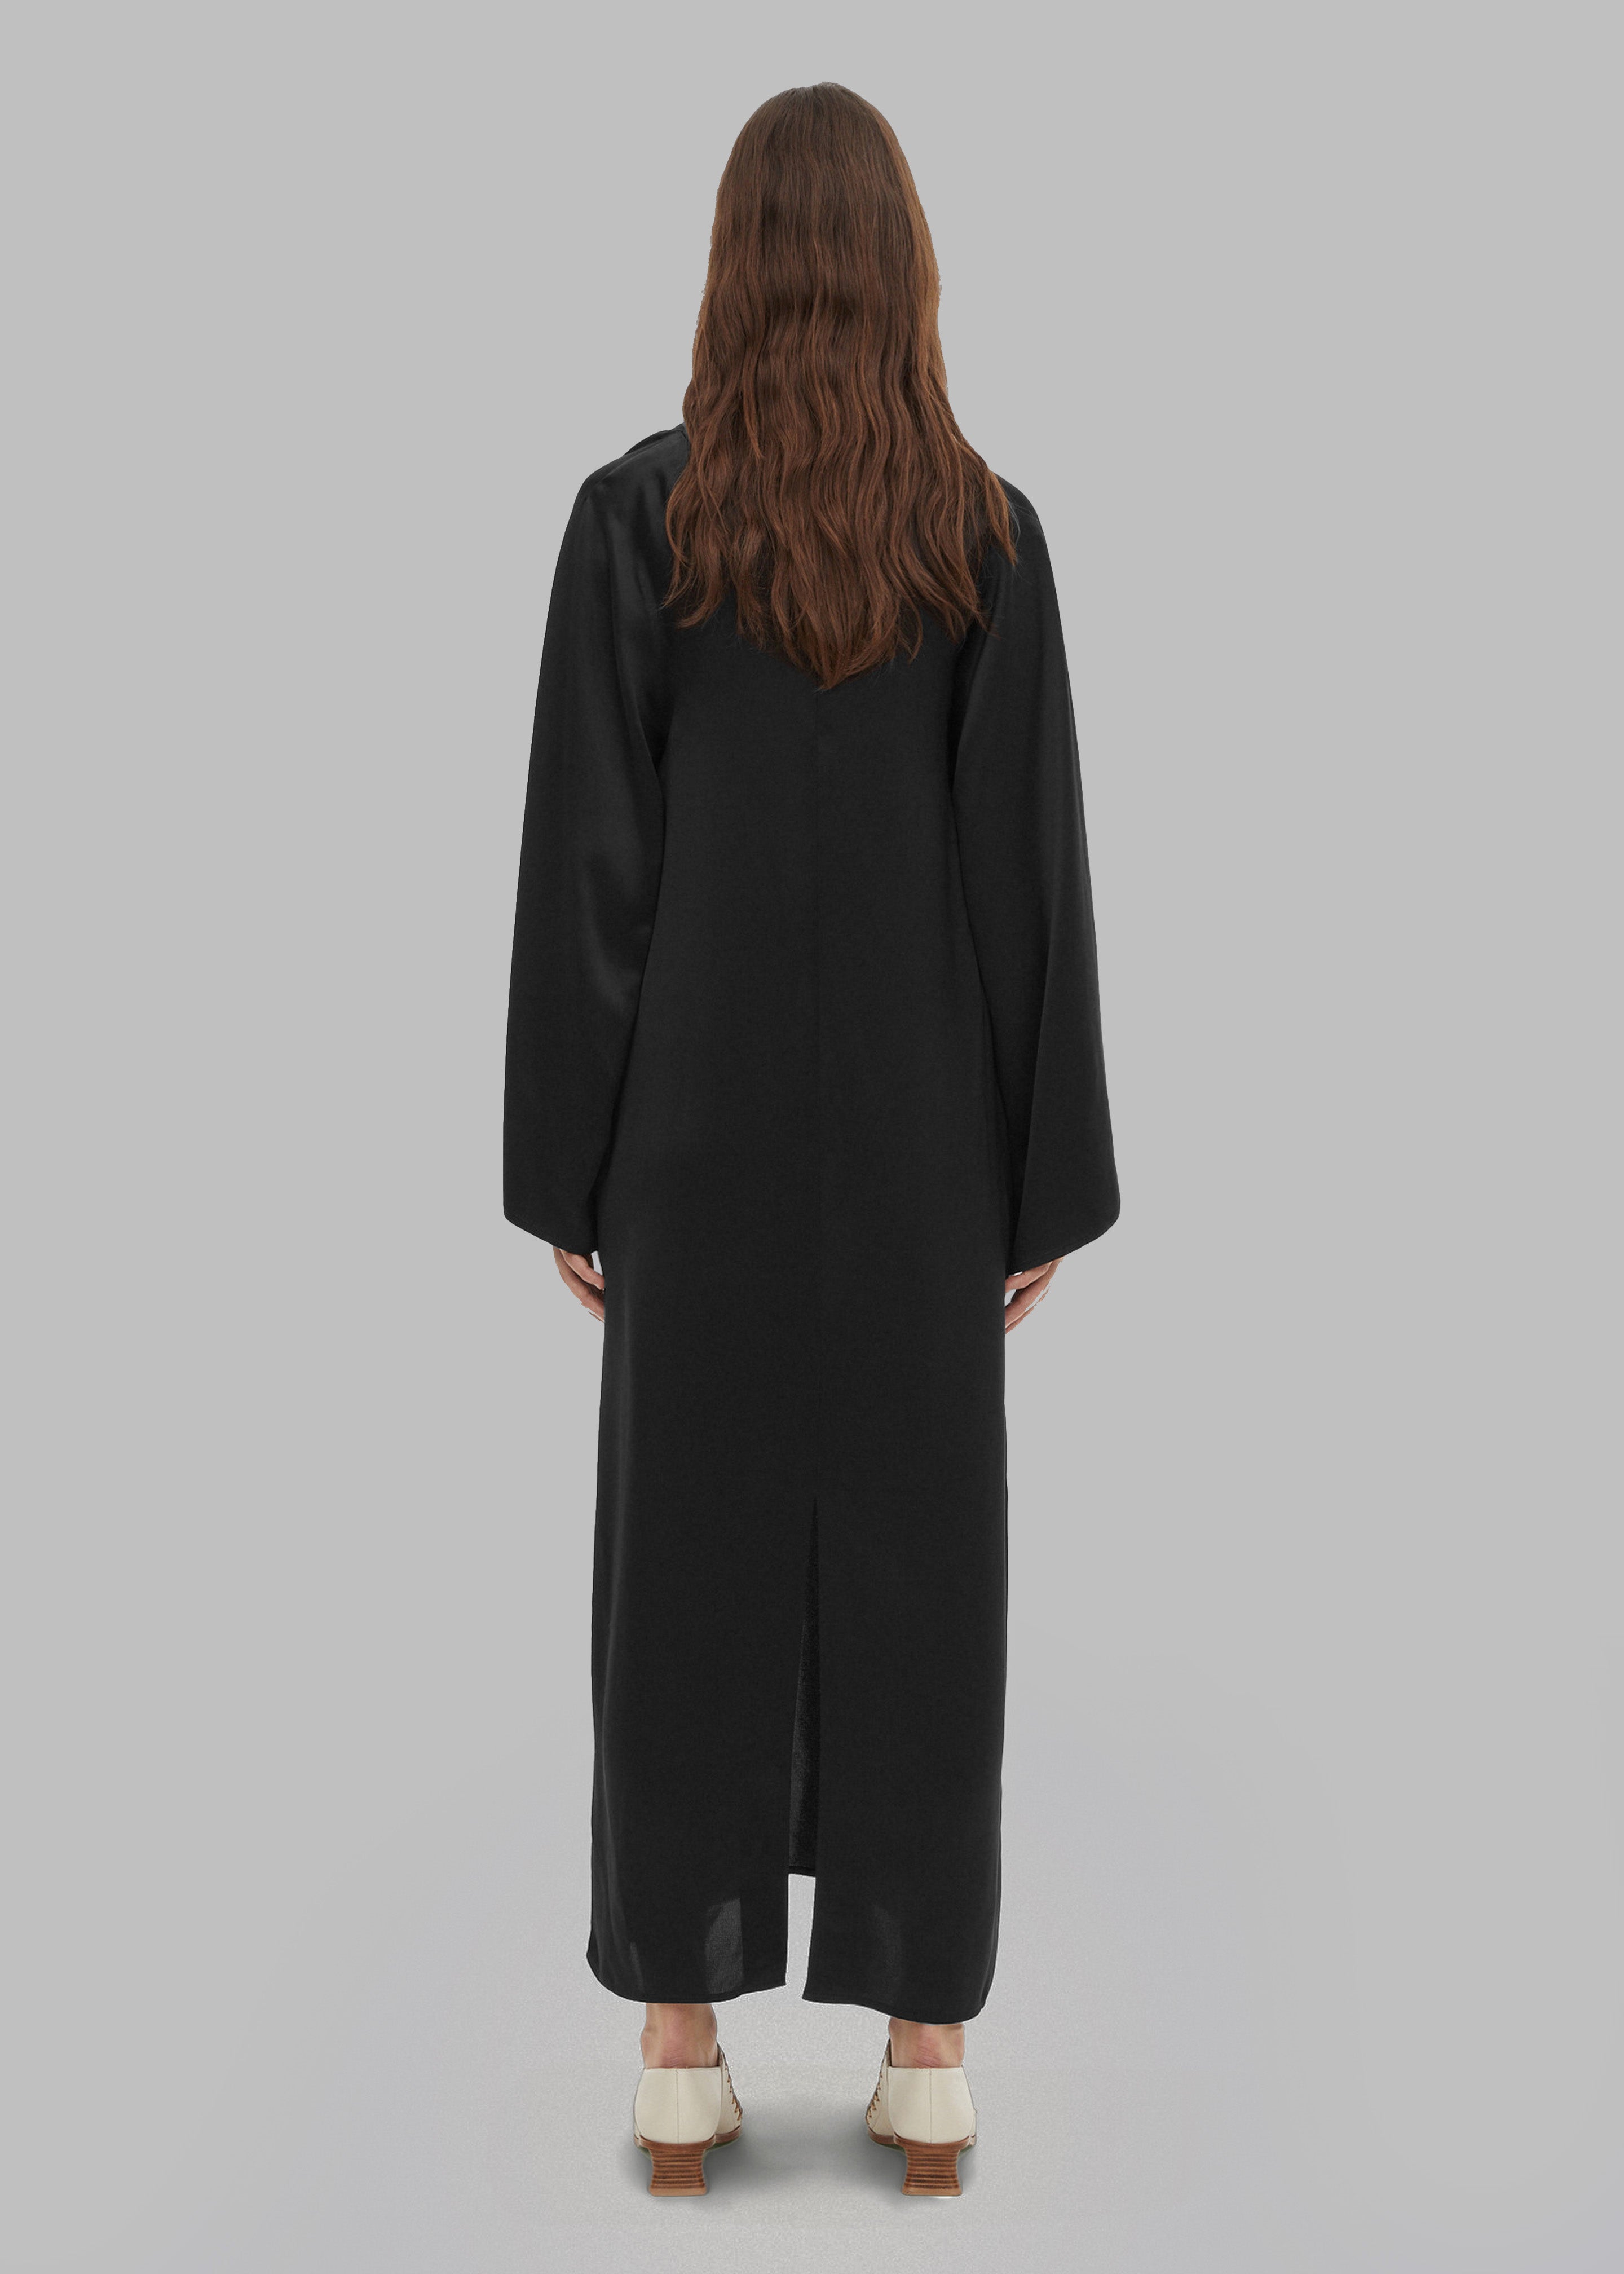 By Malene Birger Brynn Maxi Dress - Black - 6